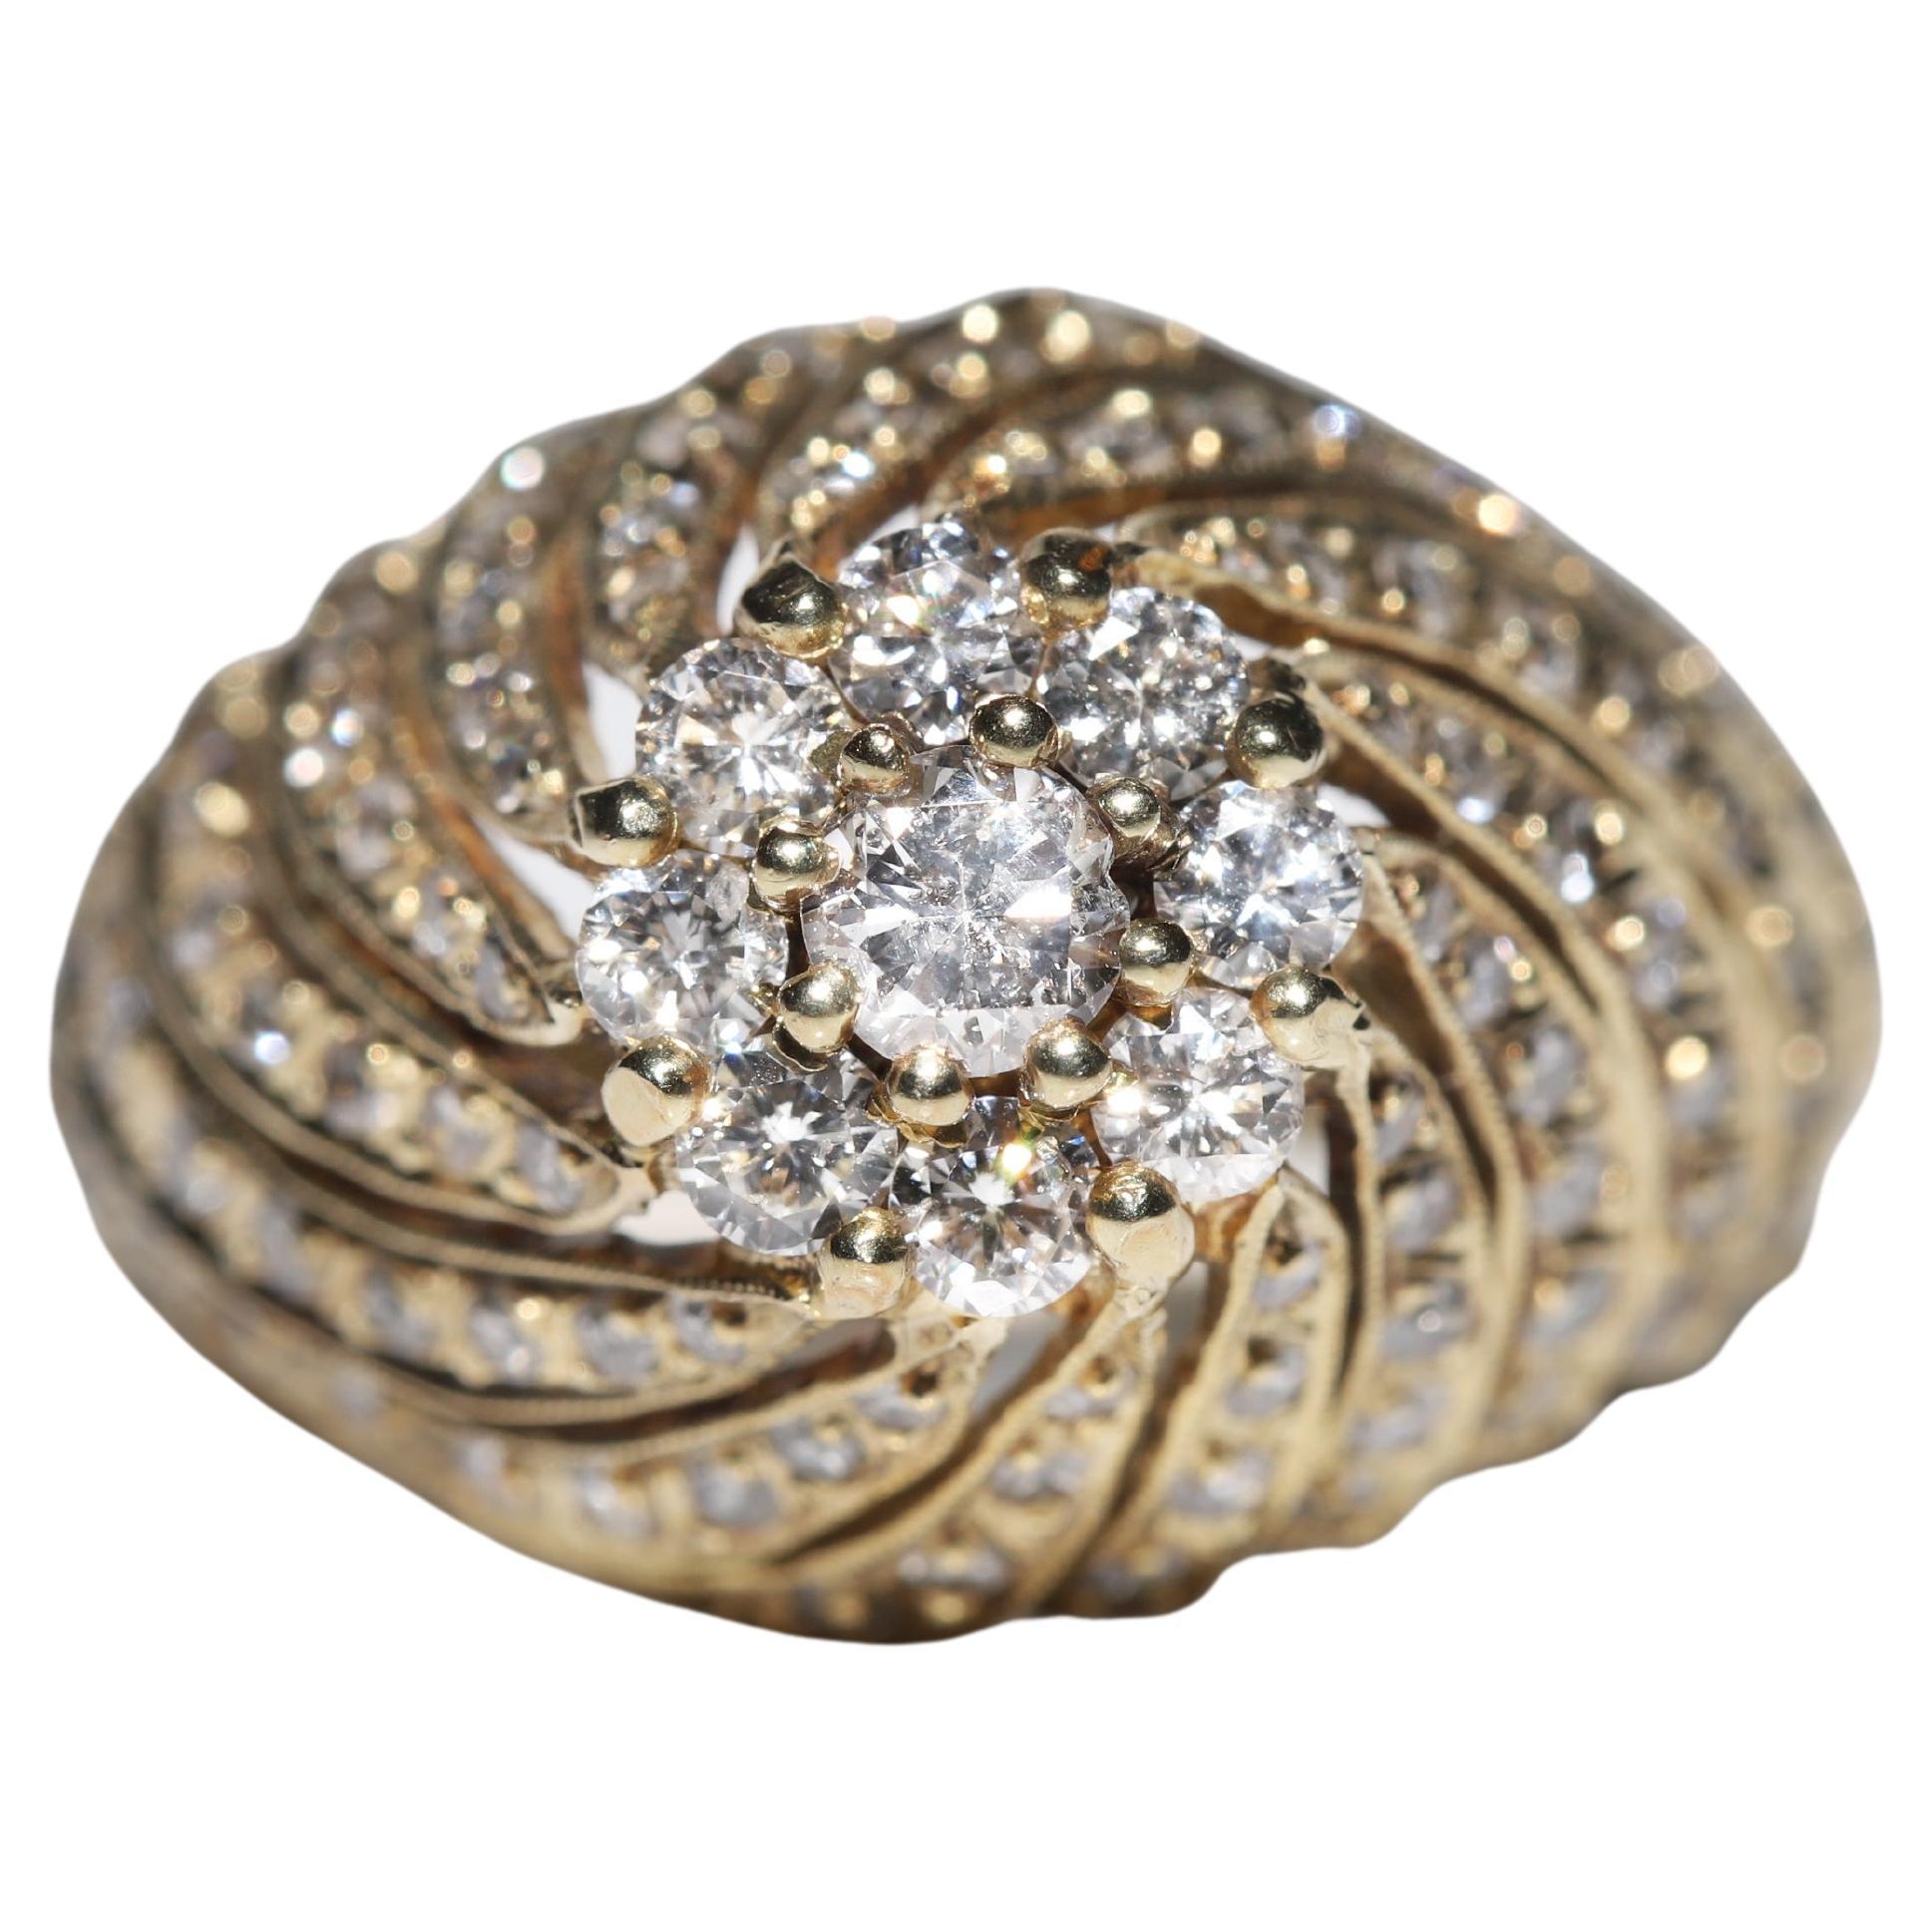 Bague vintage des années 1970 en or 18 carats décorée de diamants naturels 